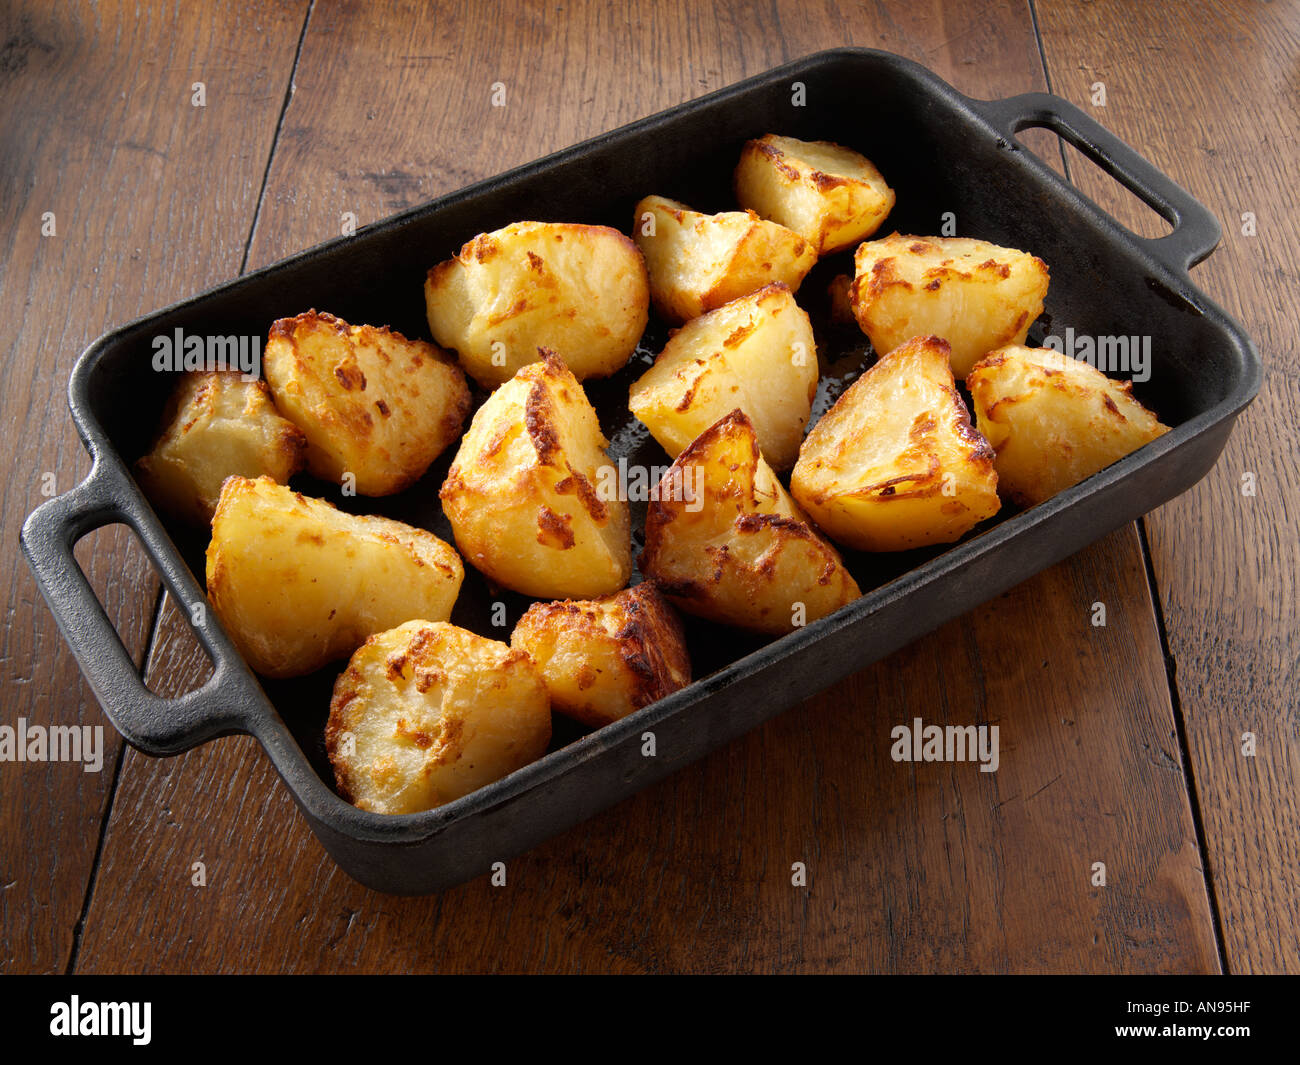 Картофель запечен в духовке